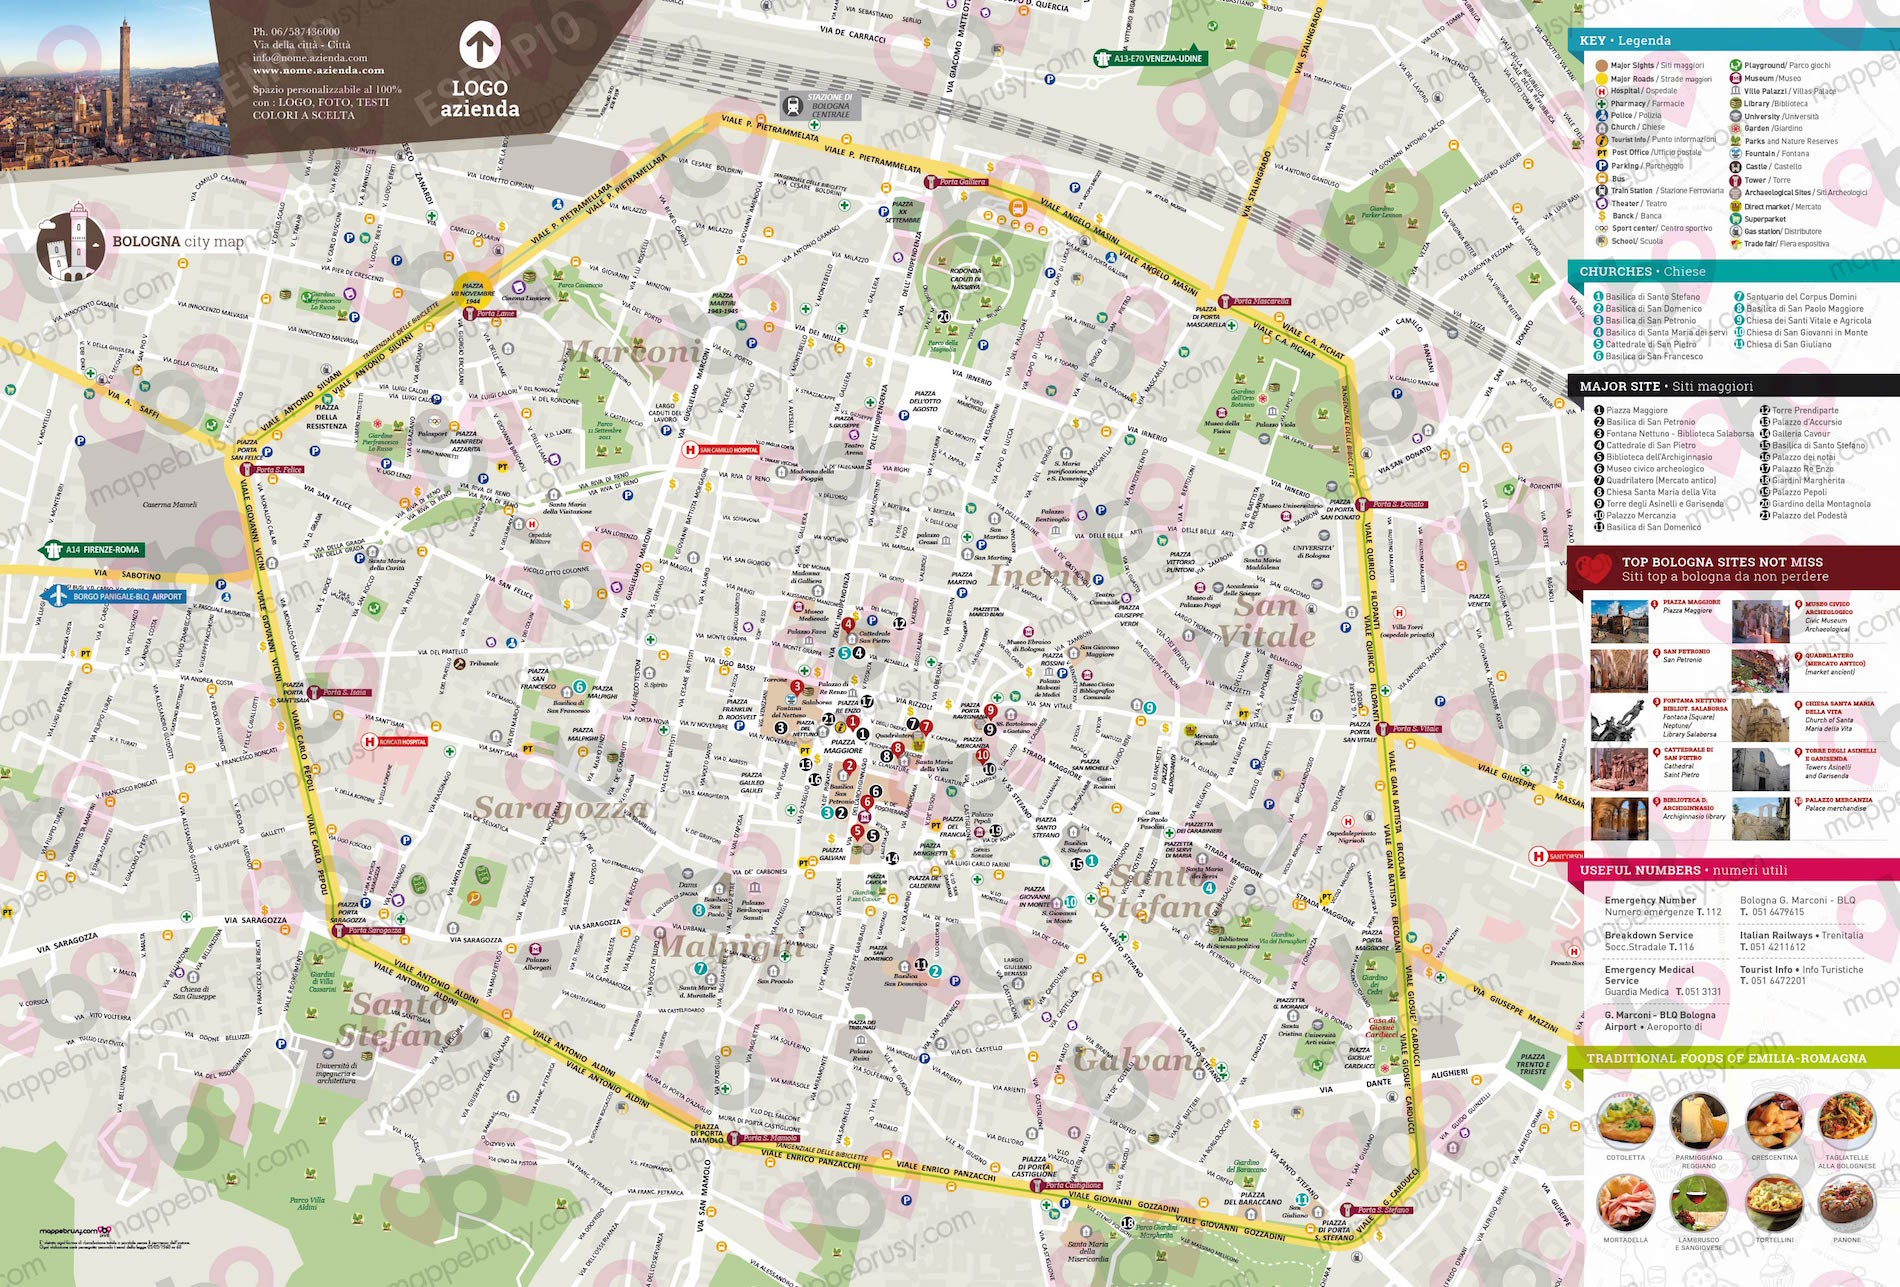 Mappa di Bologna - Bologna city map - mappa Bologna - mappa personalizzata di Bologna